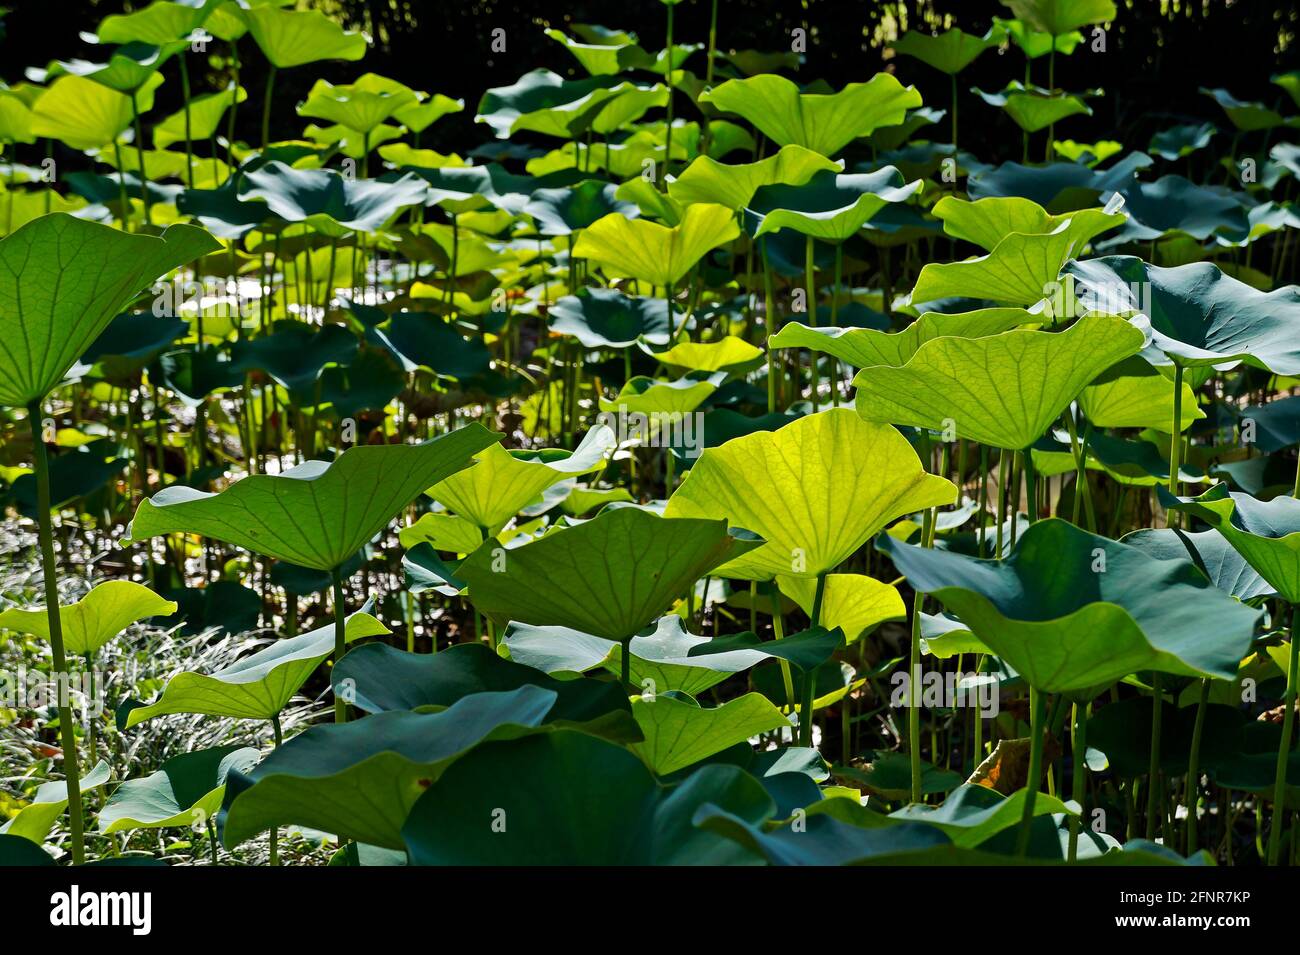 Lotus leaves (Nelumbo nucifera) on Japanese garden Stock Photo